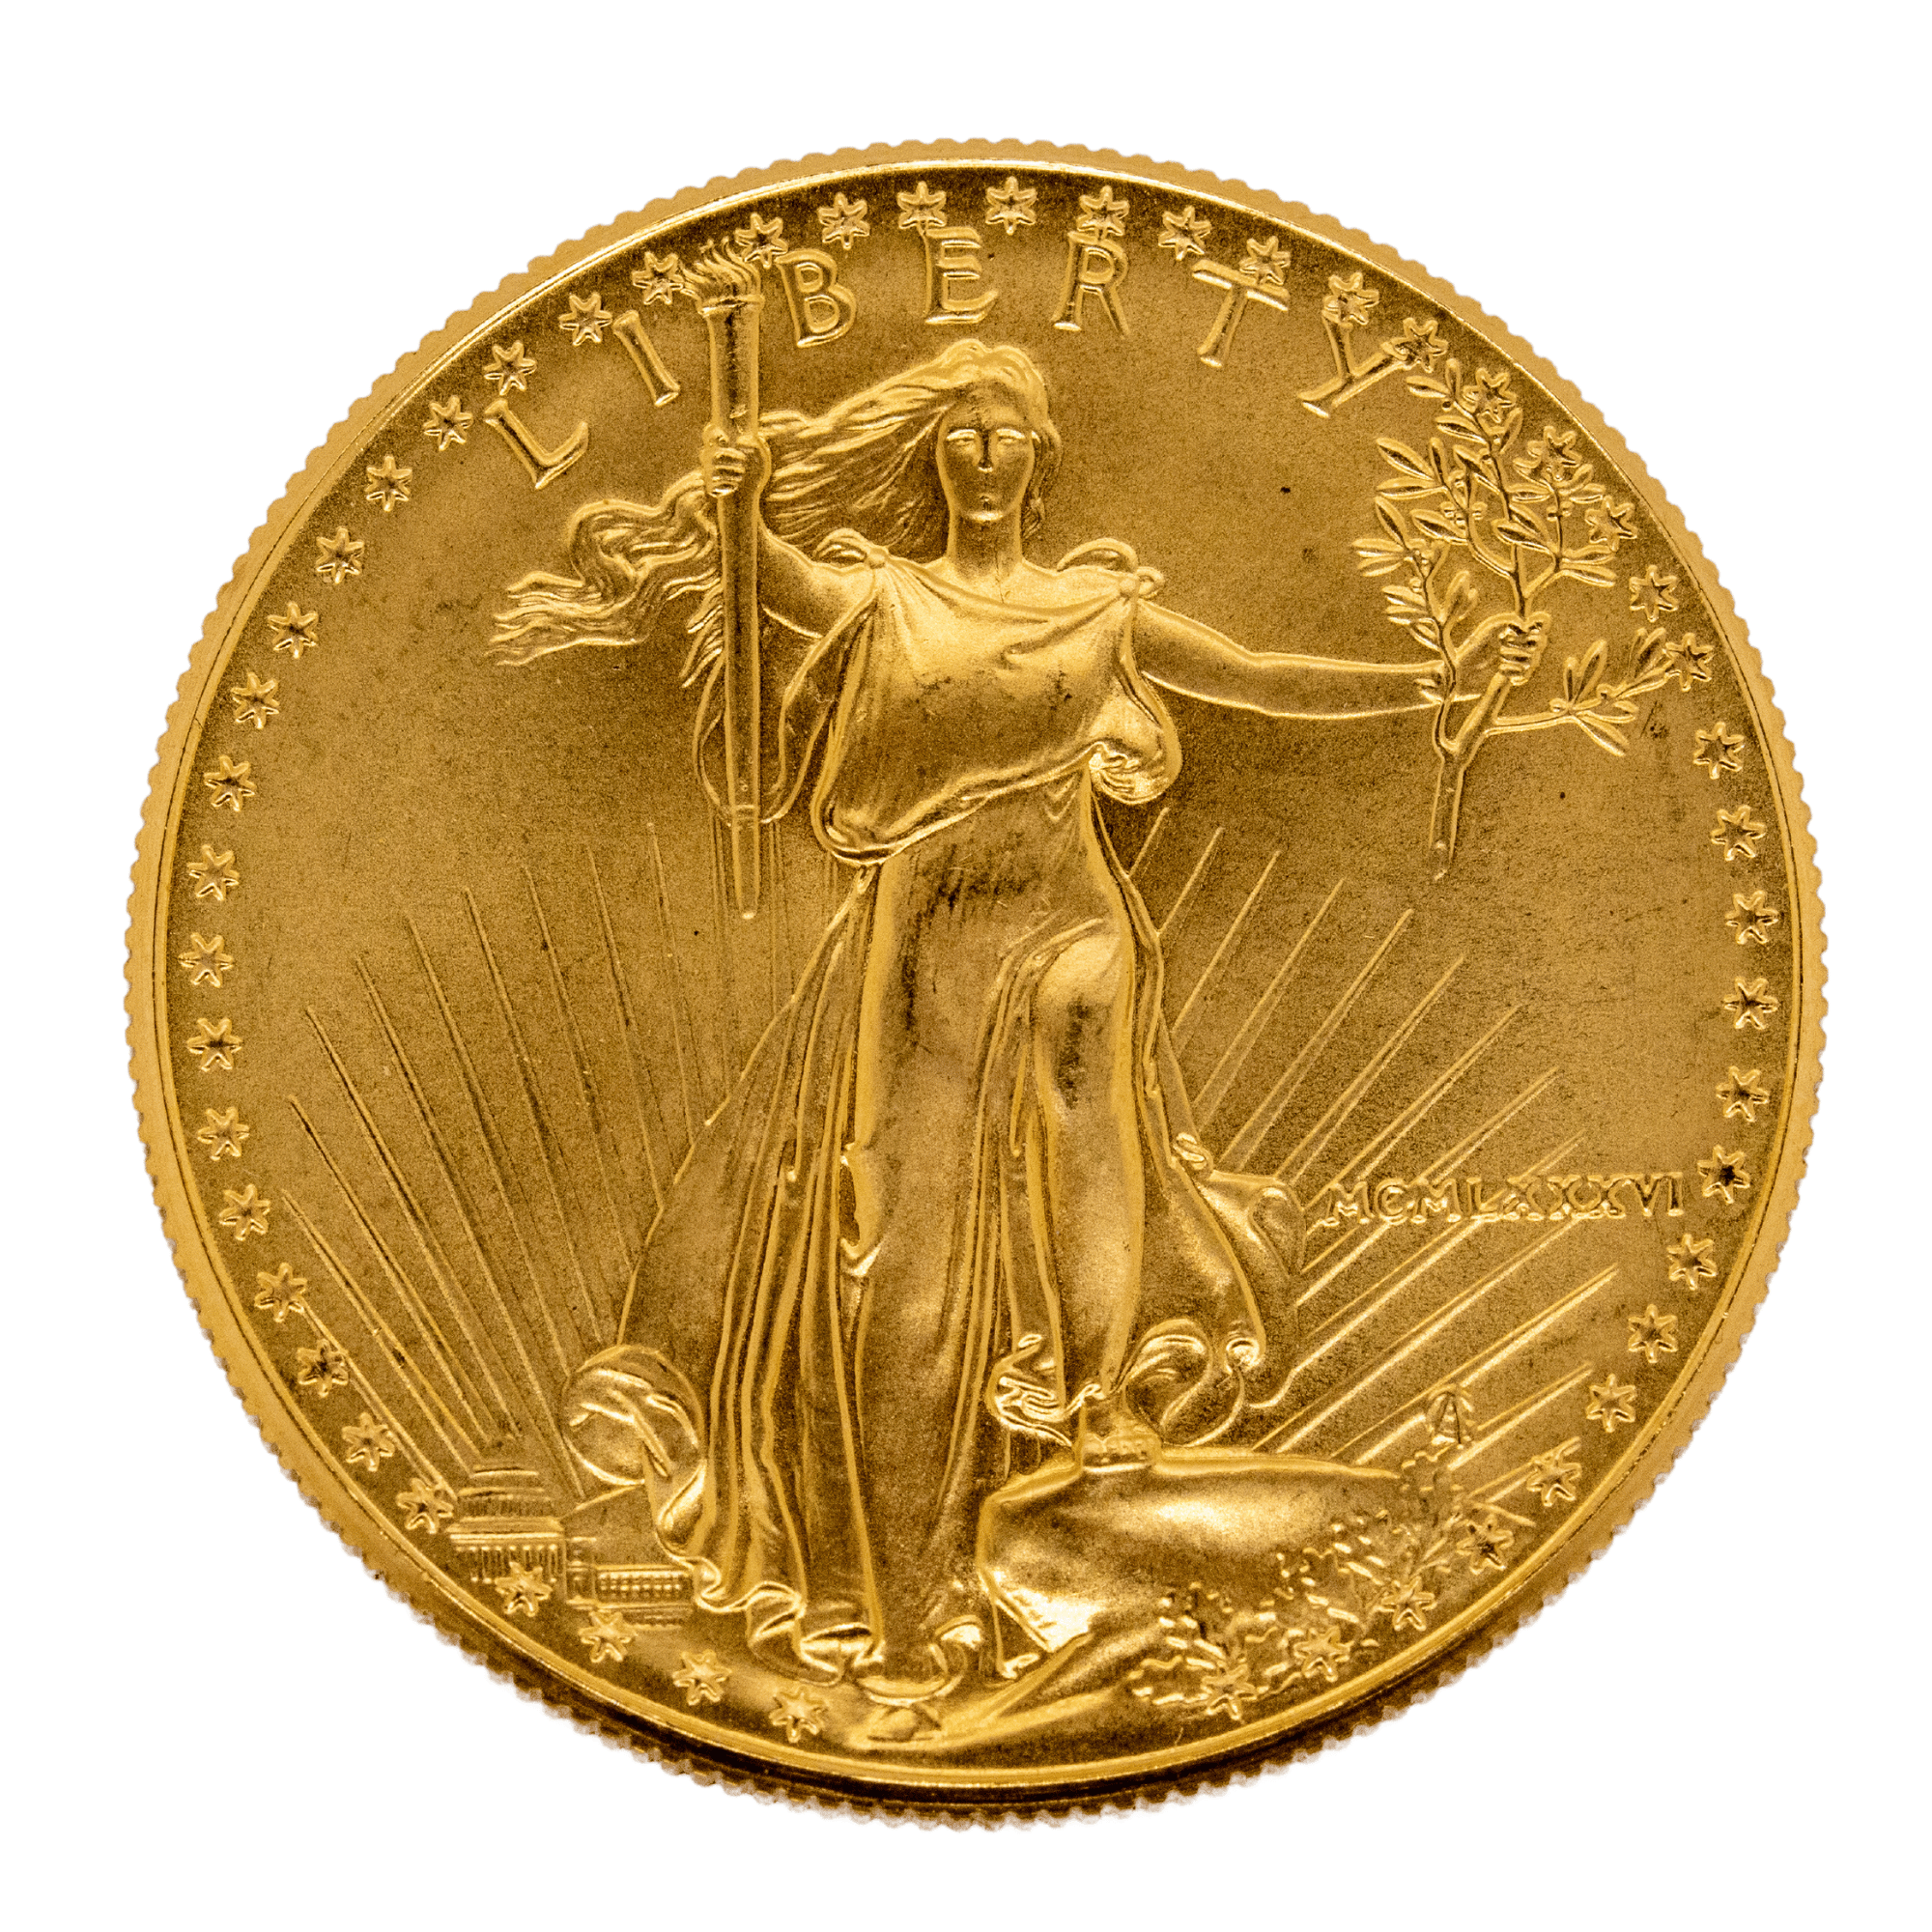 1oz USA Gold Liberty Coin